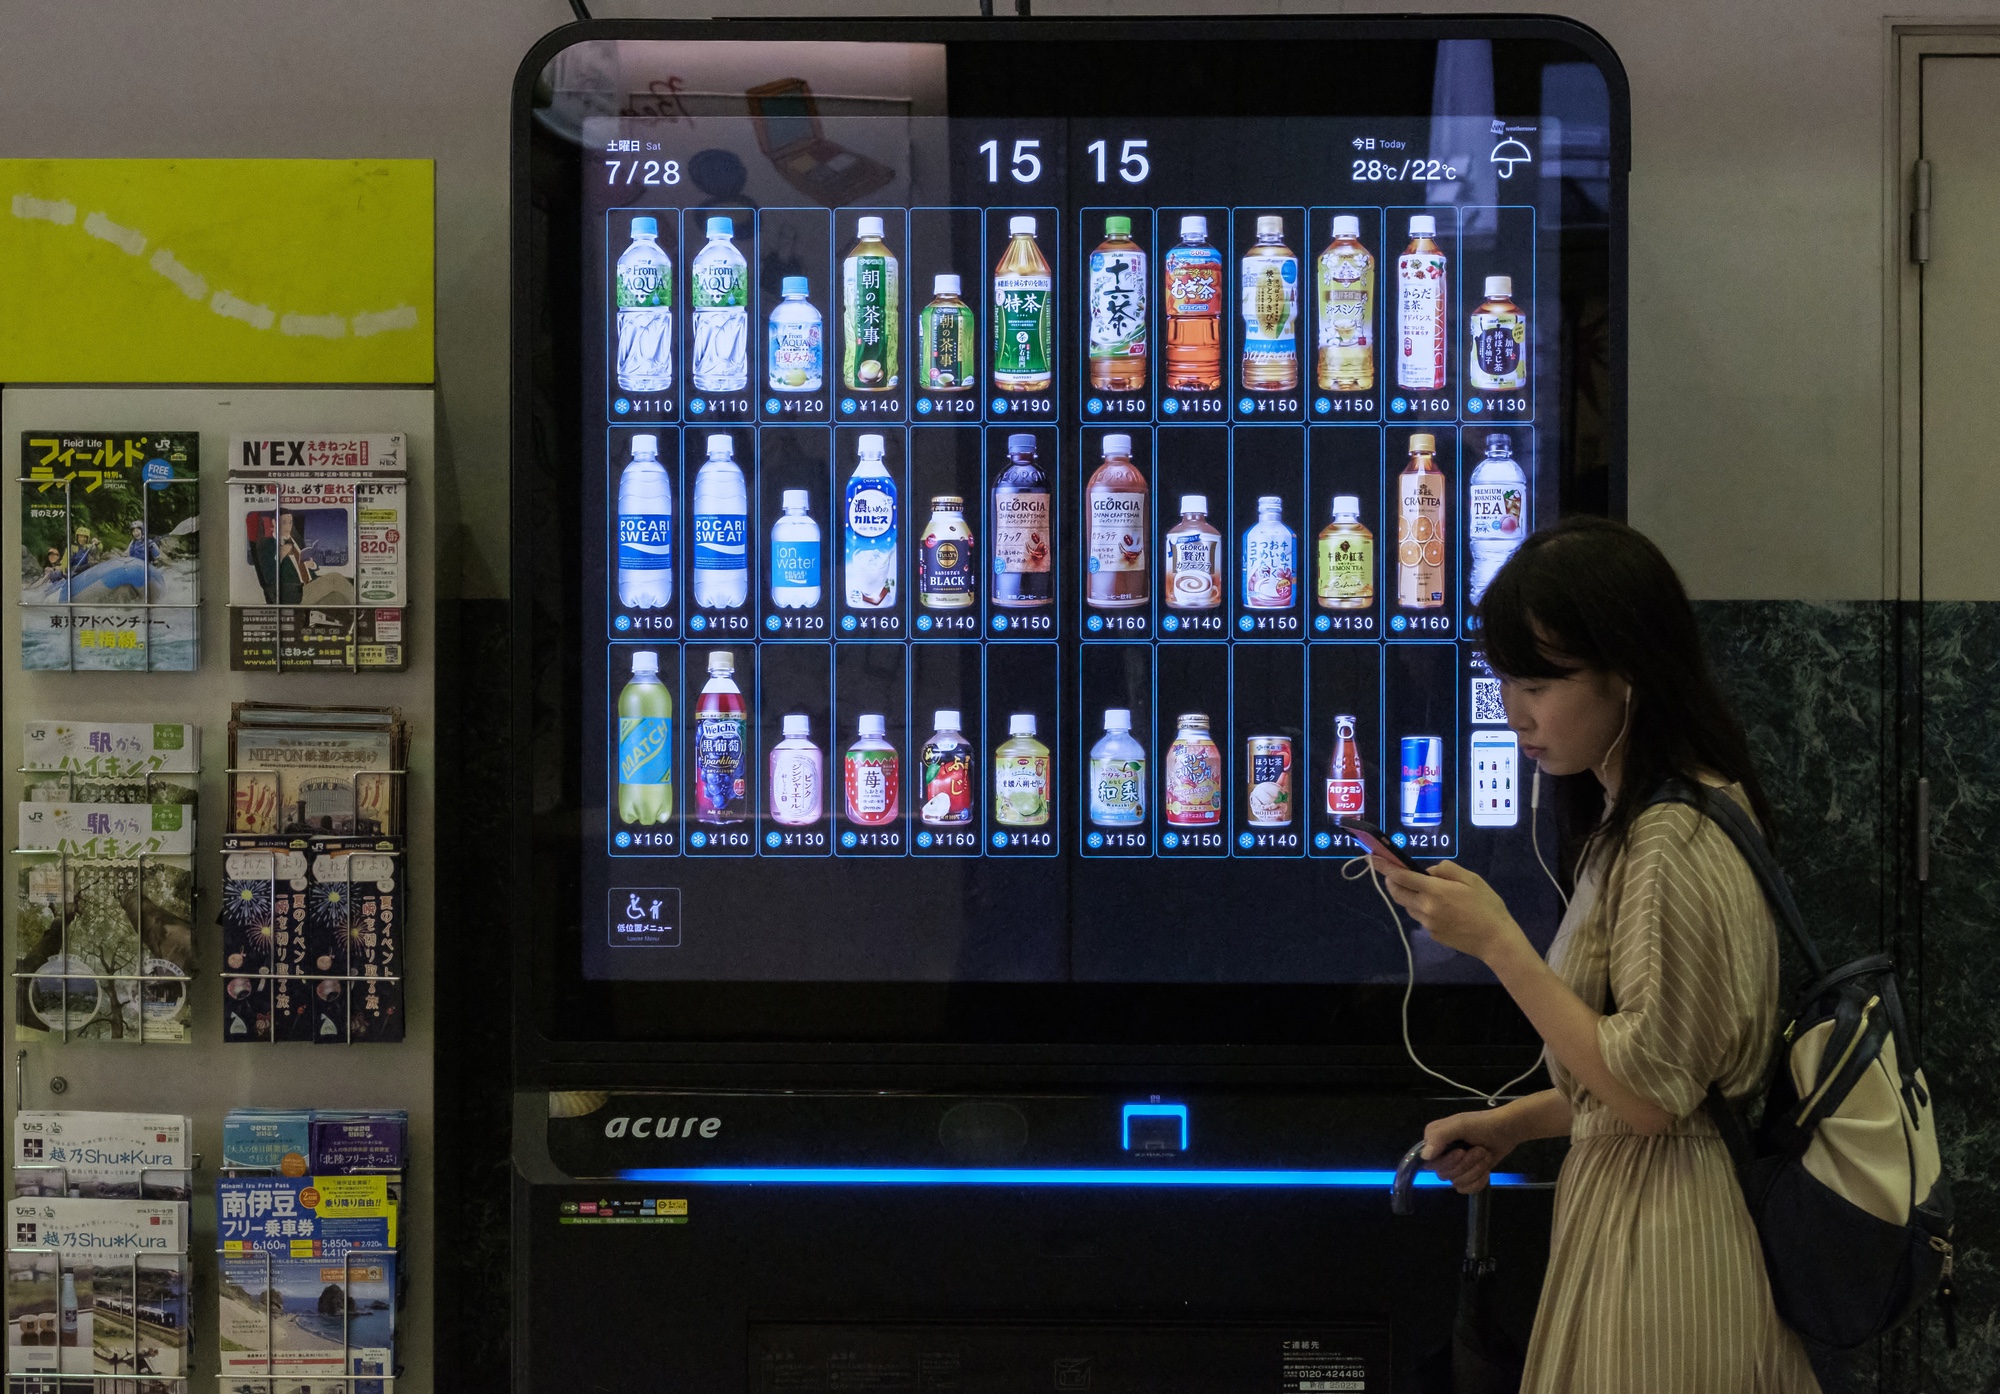 Die Automaten mit Touchscreen von Acure.